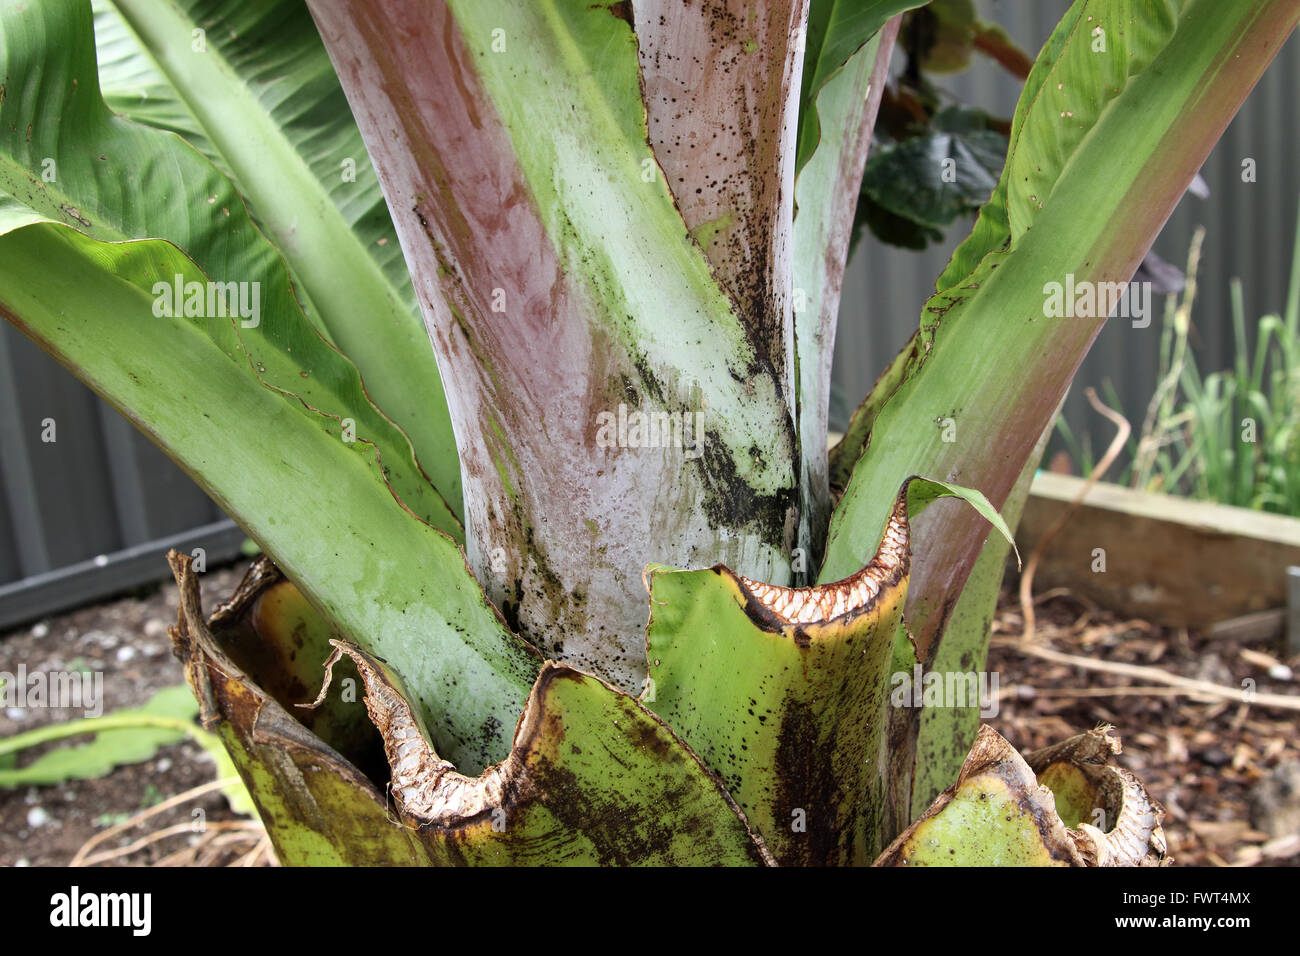 Ensete ventricosum, tronc de bananier d'Abyssinie Banque D'Images